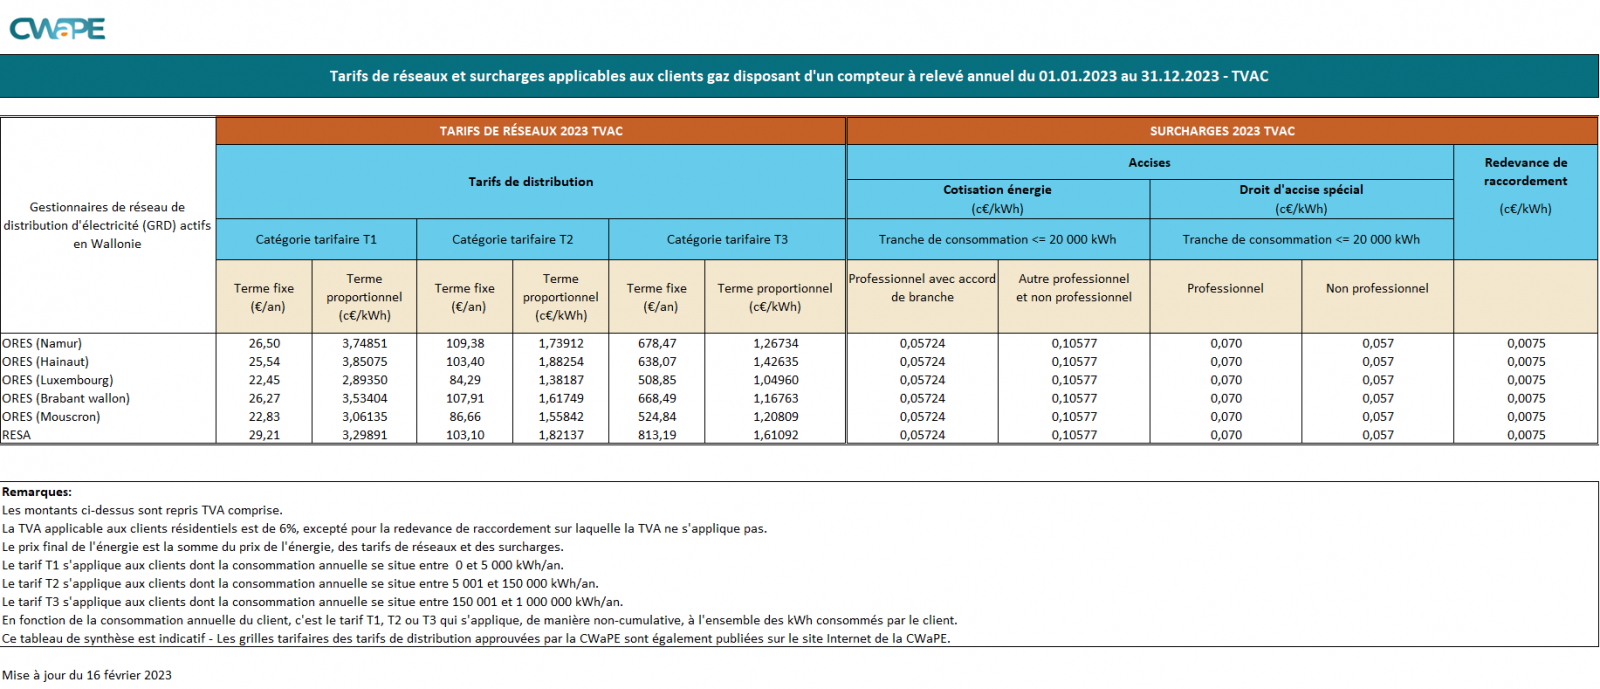 Tableau synthèse tarifs de réseau gaz 2023 TVAC - FR